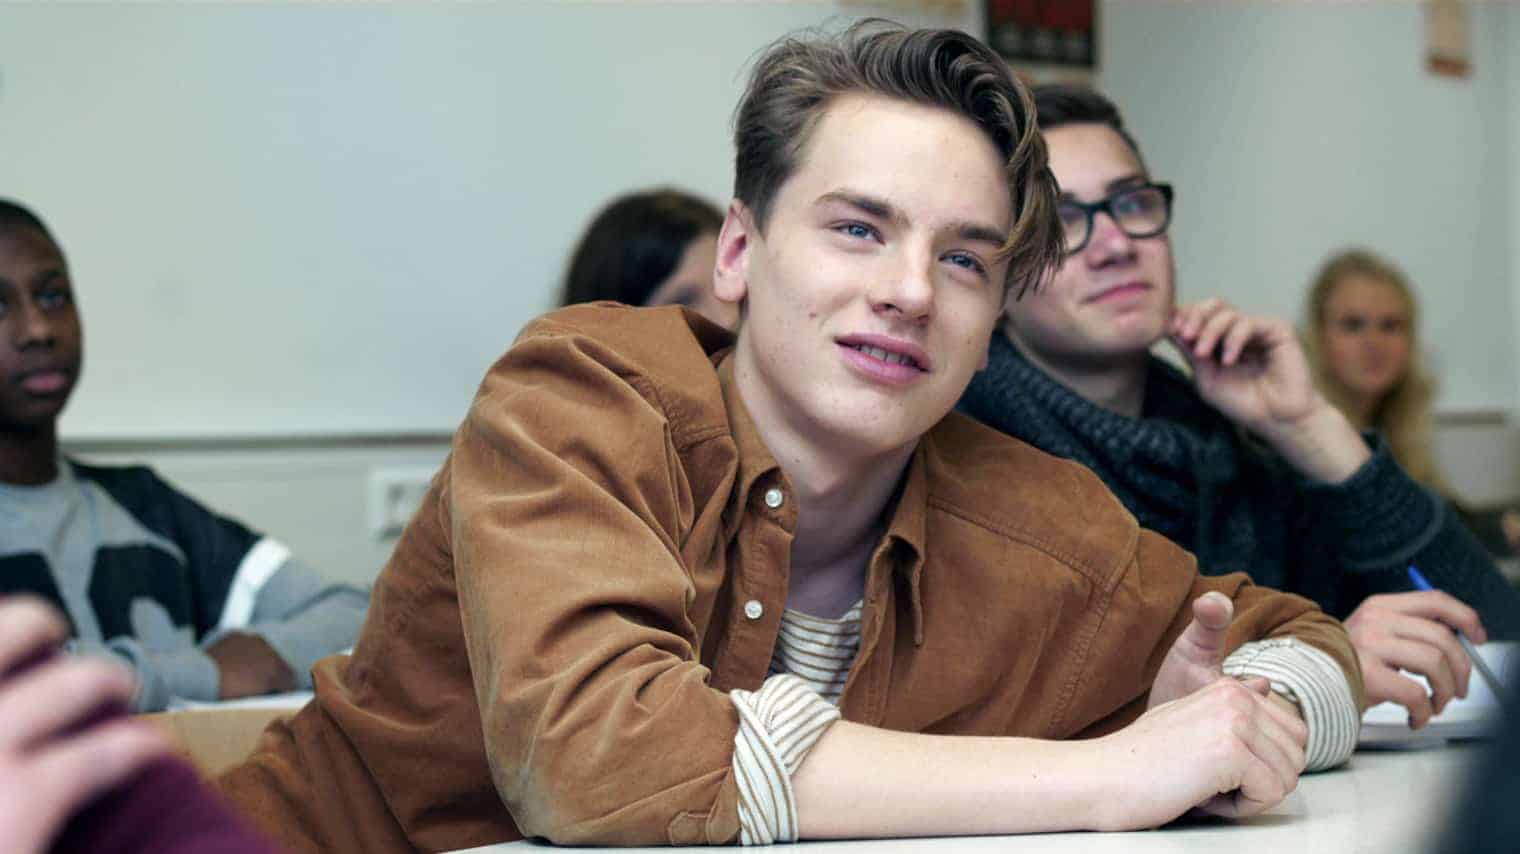 Tobias (Tobias Kersloot) in class